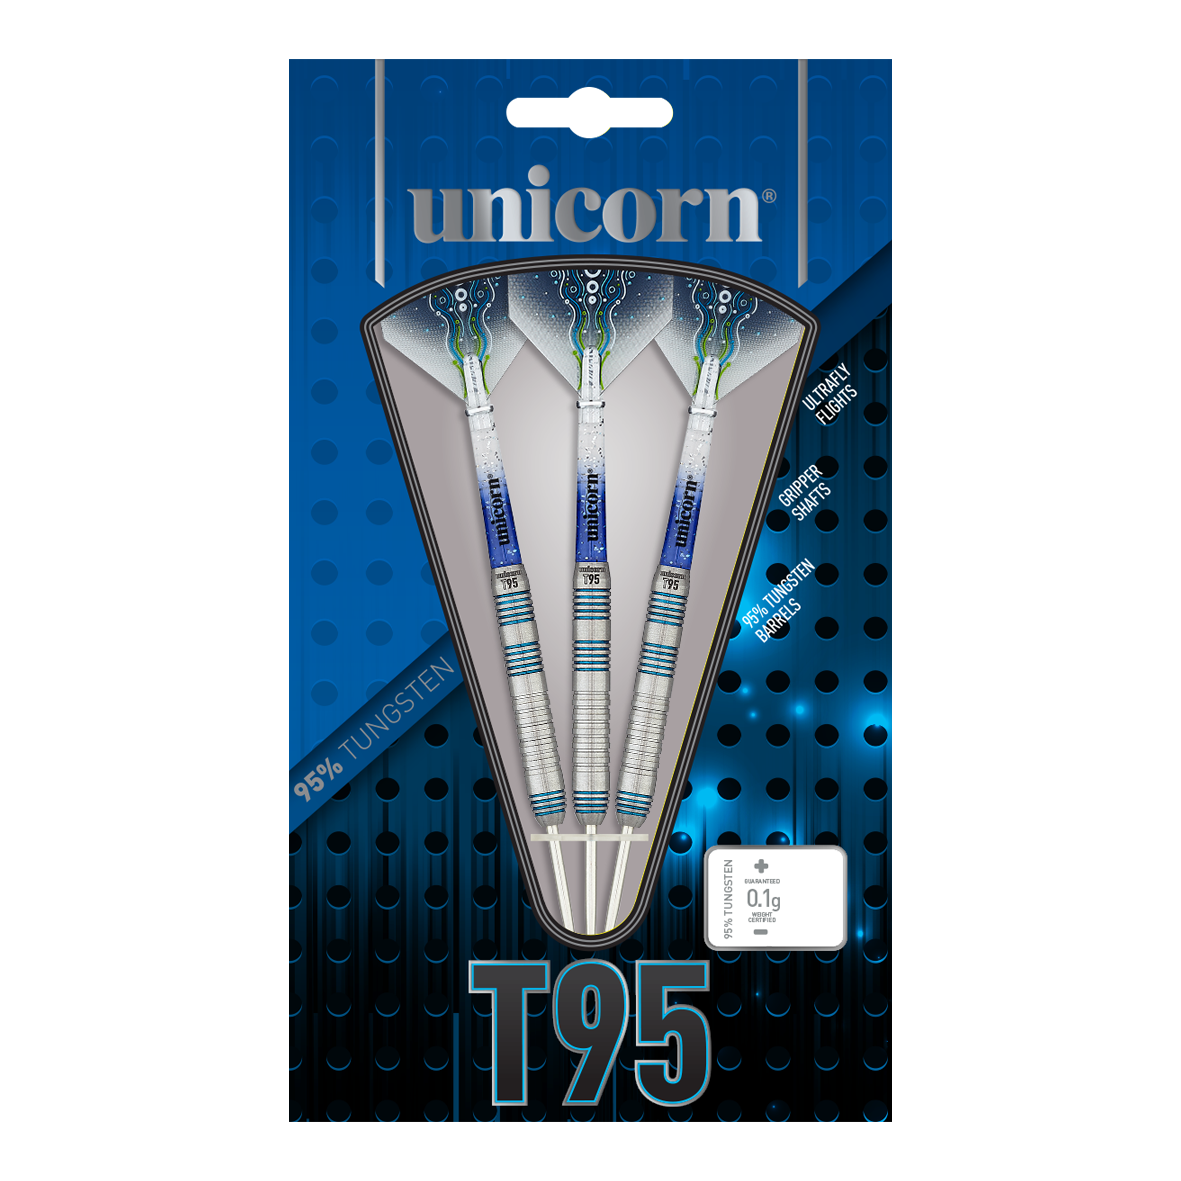 Unicorn T95 Core XL Bleu Style 2 fléchettes en acier - 23 g